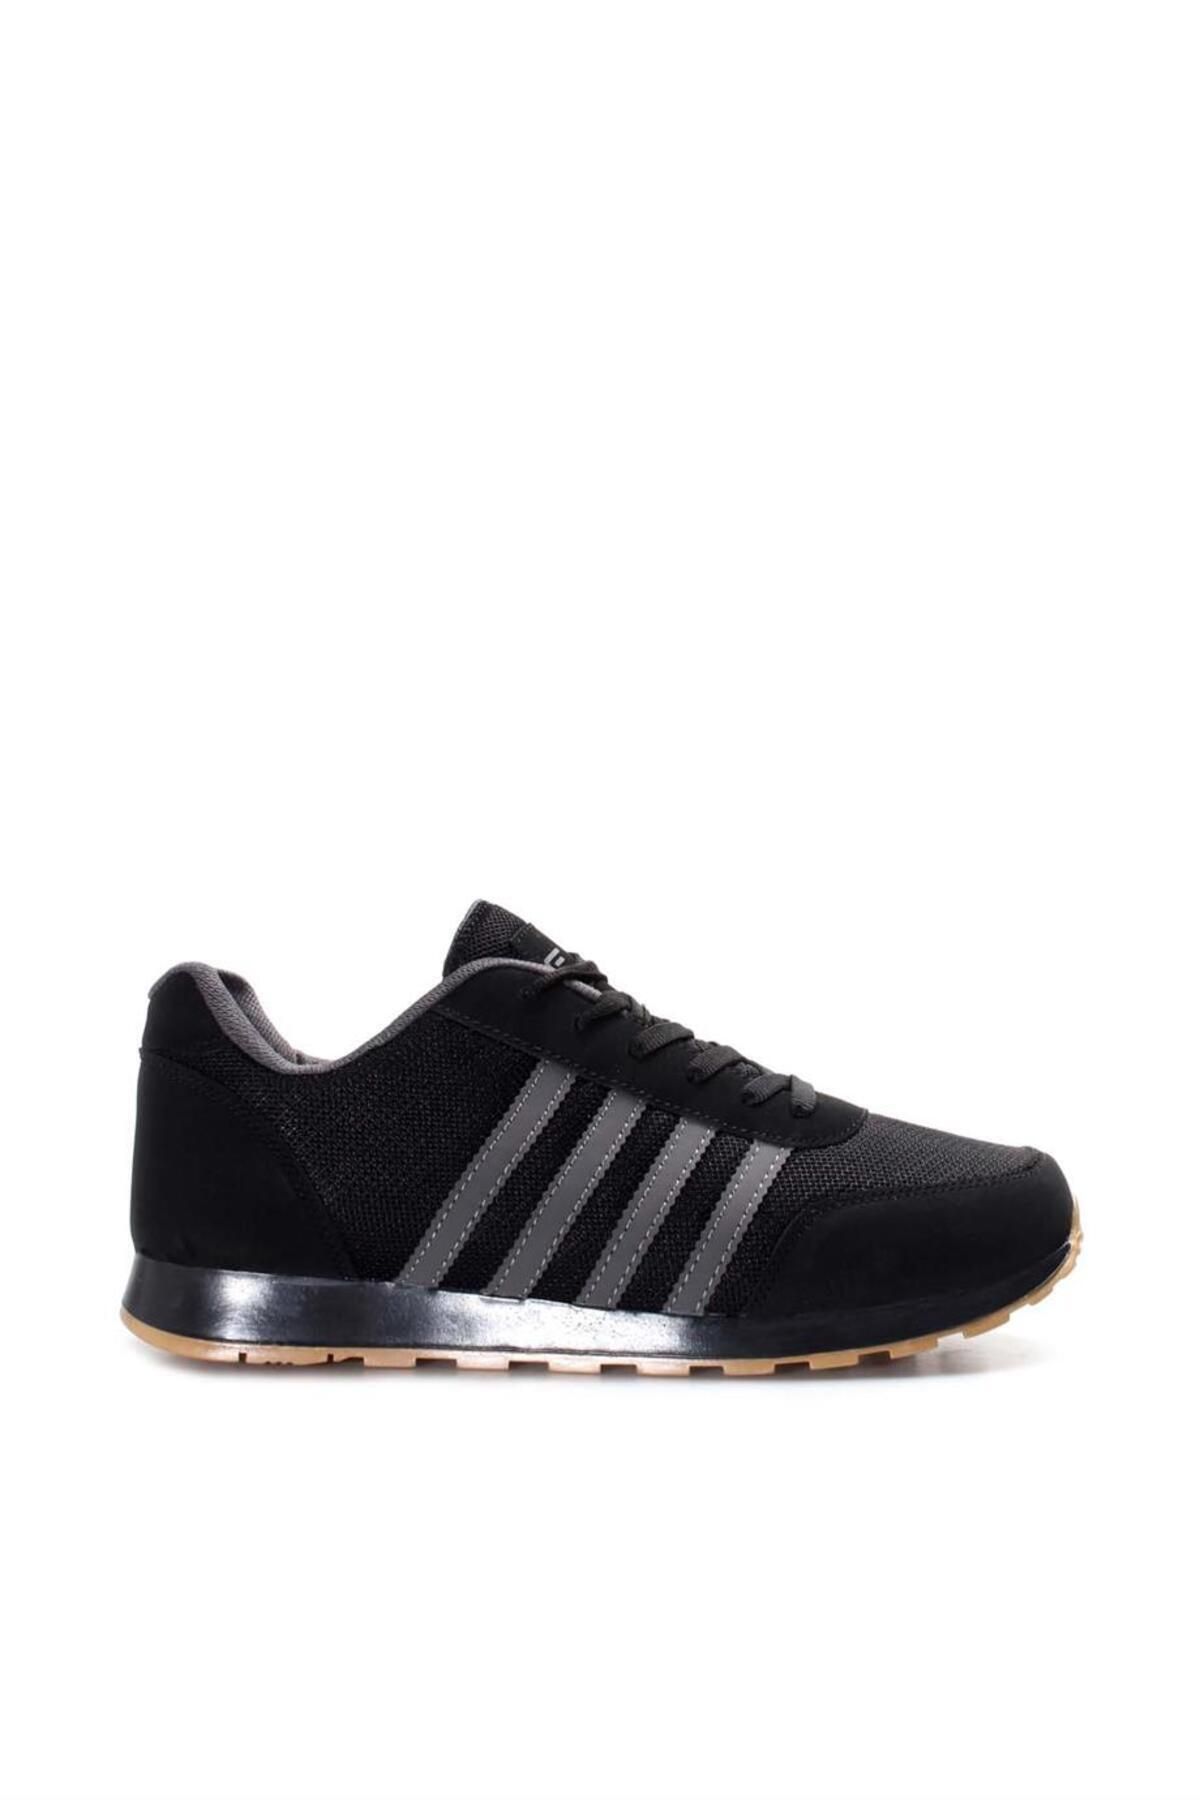 Fast Step Siyah Füme Erkek Sneaker Ayakkabı 590ma010